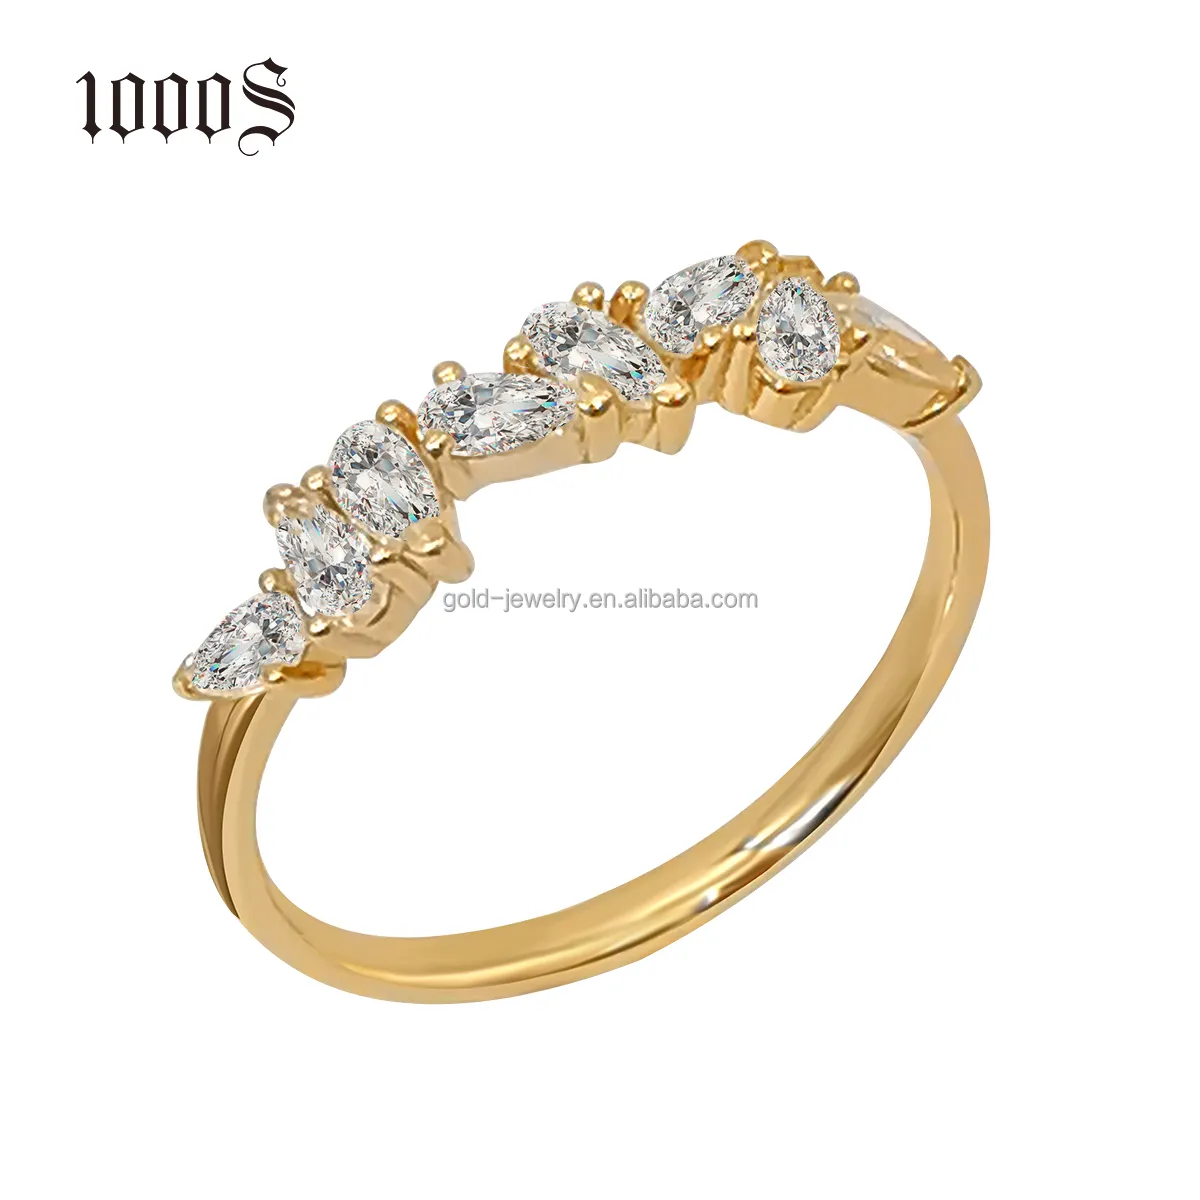 Einfaches Design Moissan ite Ringe AU585 14 Karat massives Gelbgold Ringe Hochzeit Verlobung Fingerring Custom ized Fine Jewelry